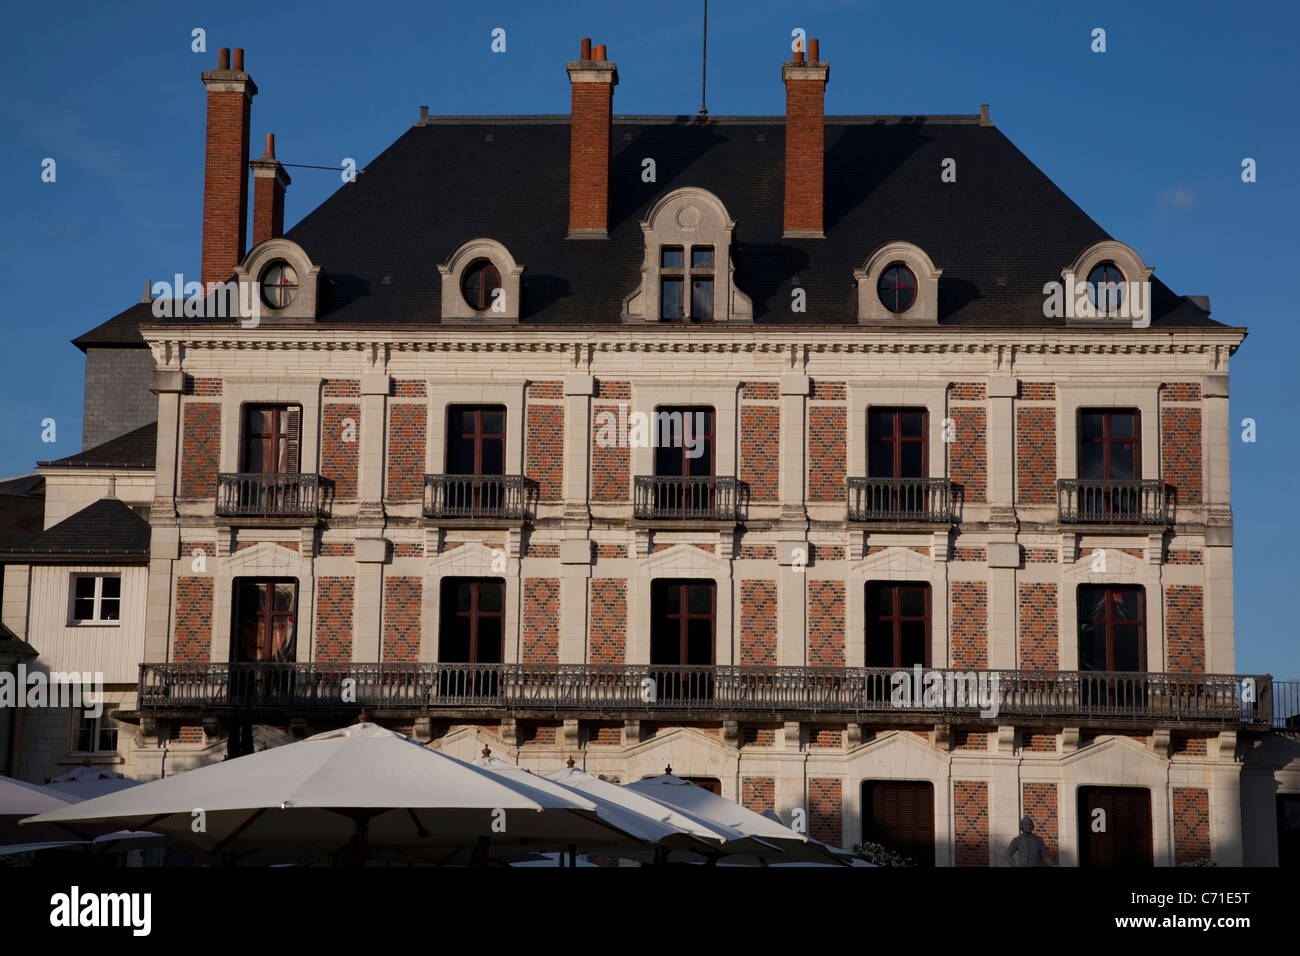 Main-Fassade des Maison De La Magie - House of Magic, Place du Chateau Square, Blois, Frankreich Stockfoto